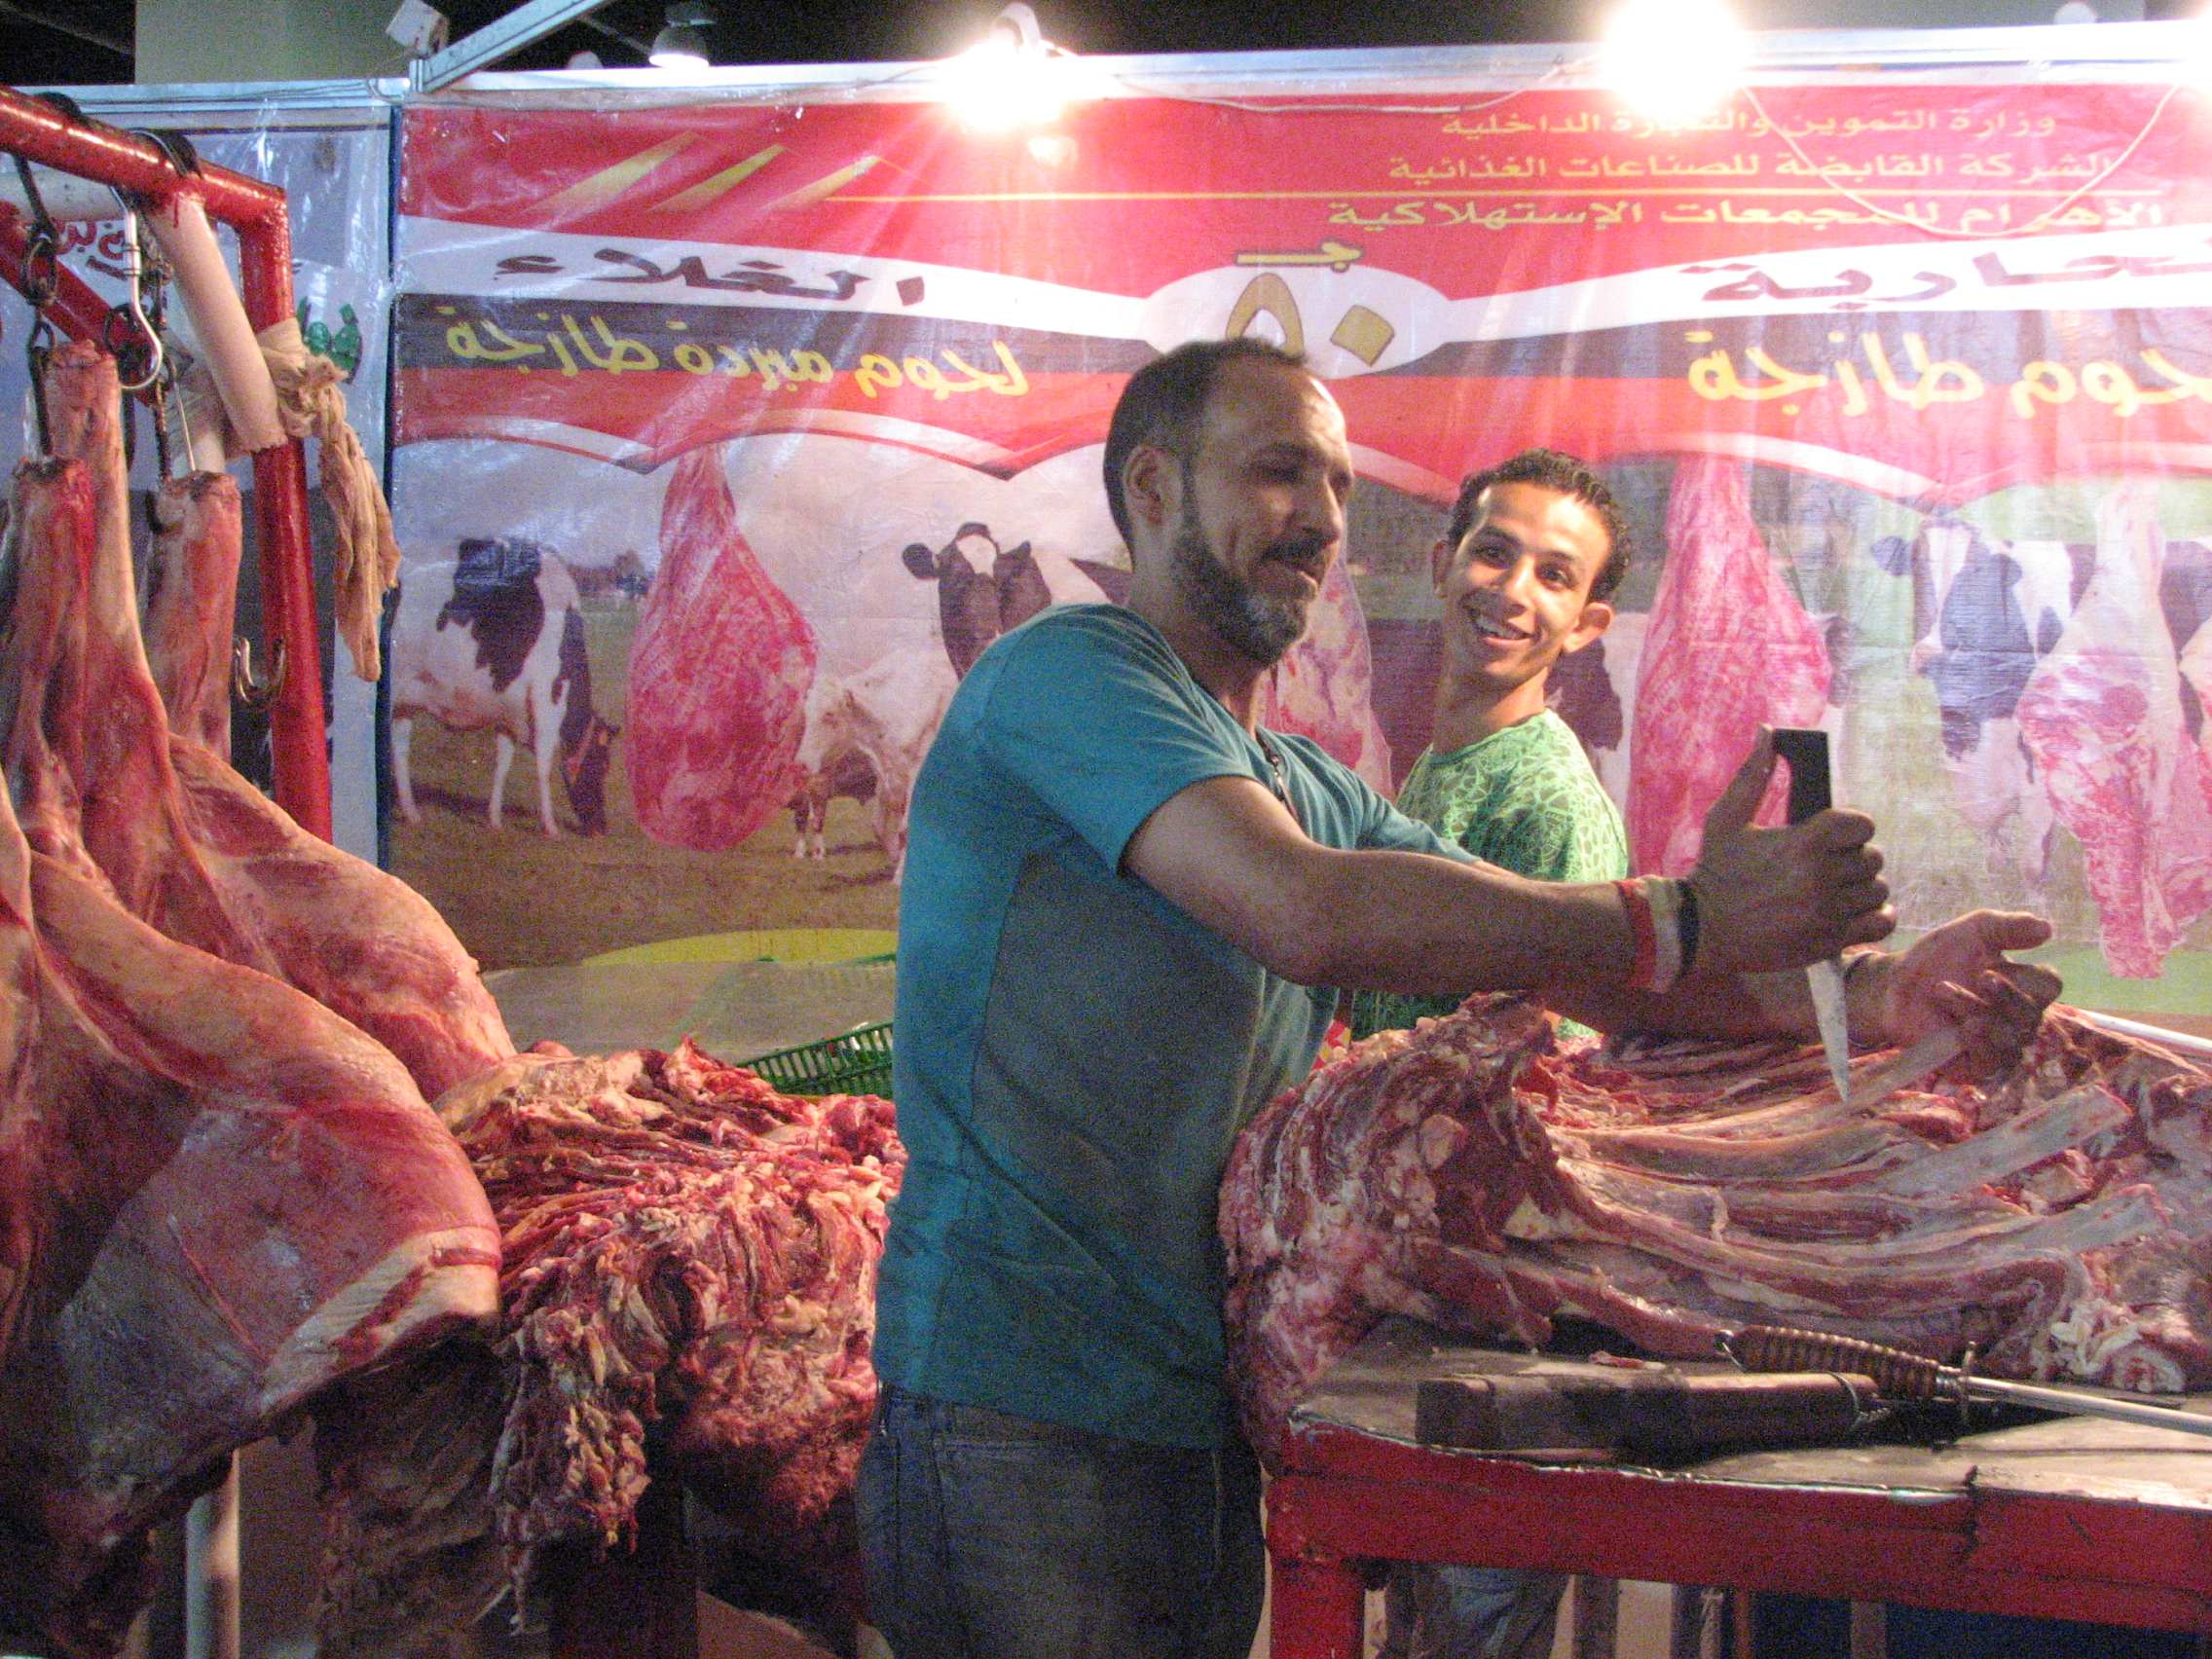 Besonders gefragt auf den Ramadan-Märkten der Regierung ist Fleisch, das nur halb so teuer ist wie in normalen Geschäften.